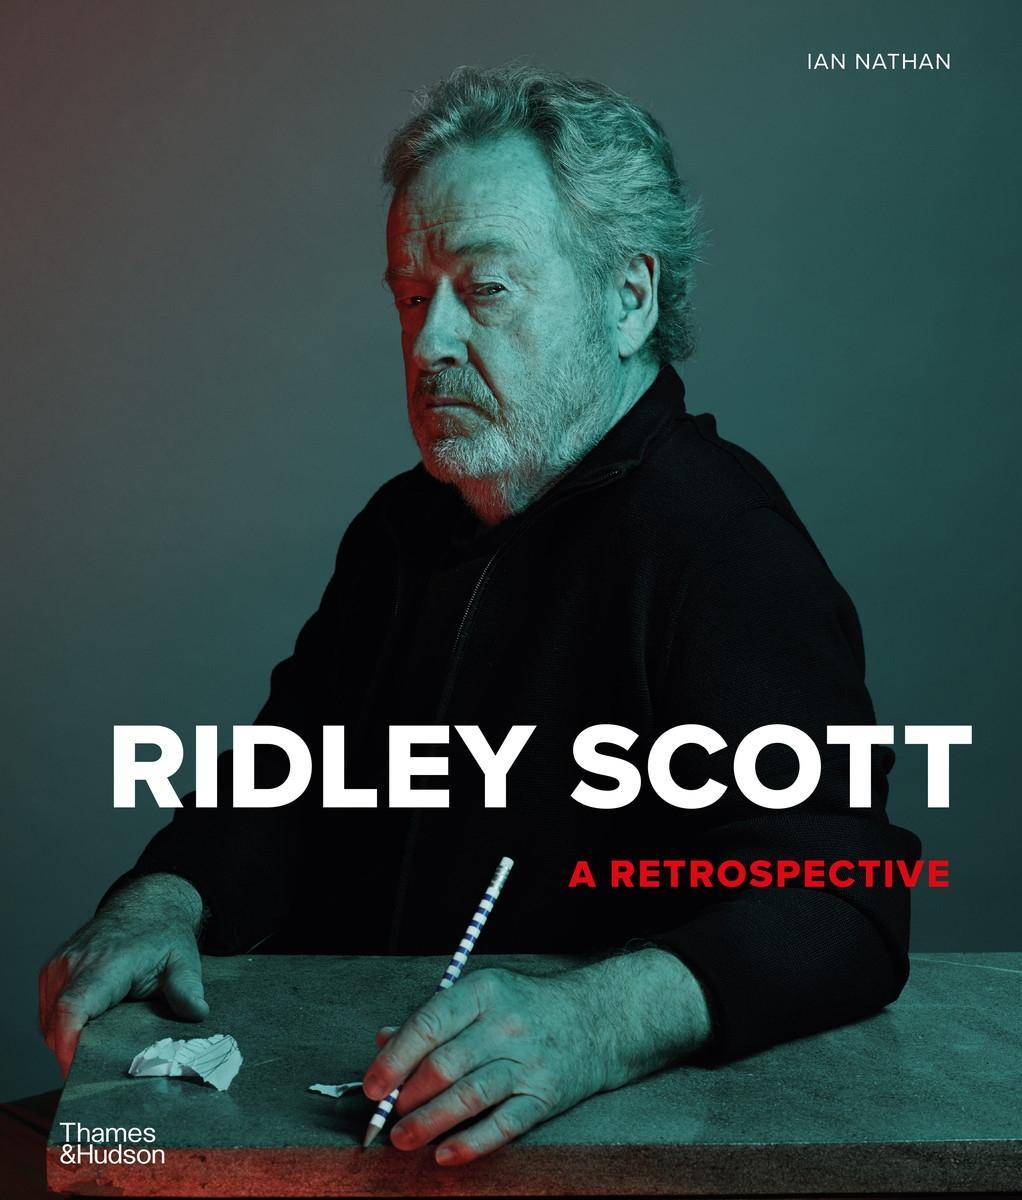 Book Ridley Scott: A Retrospective Ian Nathan